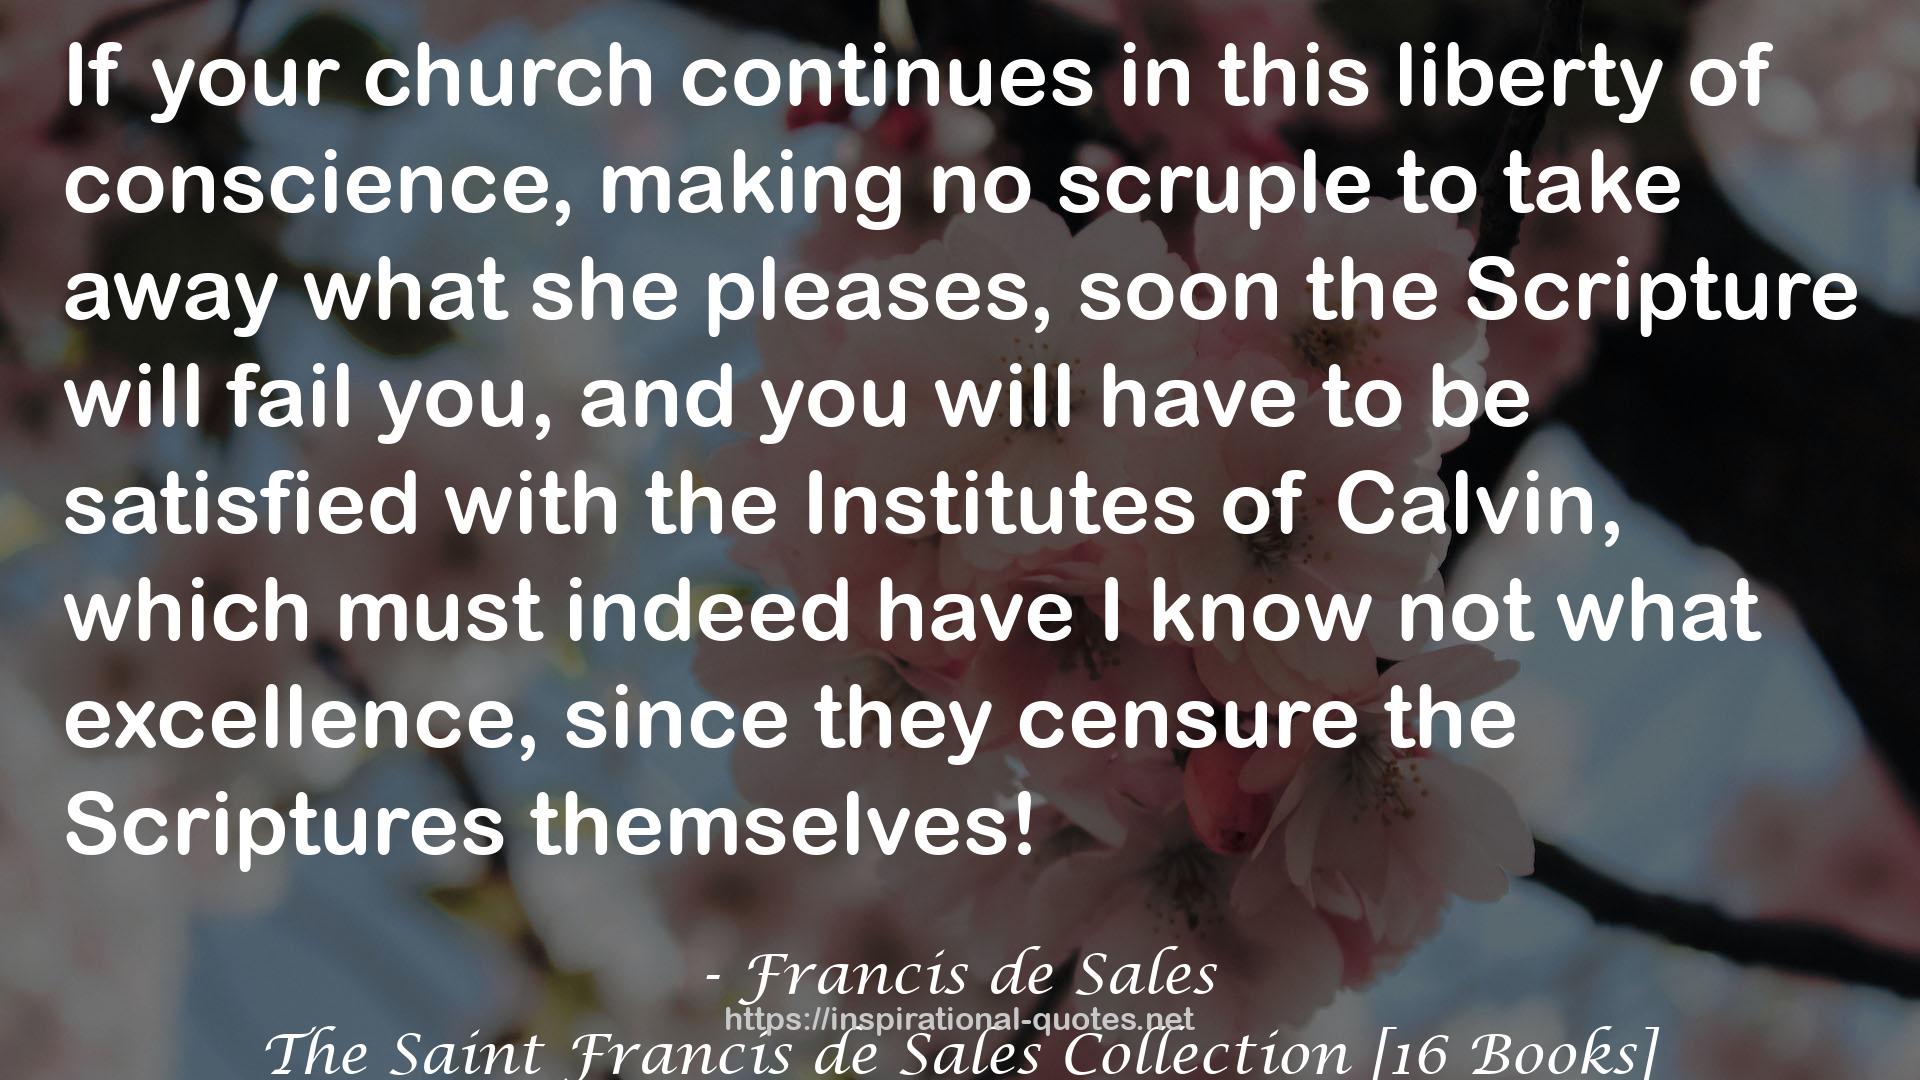 The Saint Francis de Sales Collection [16 Books] QUOTES